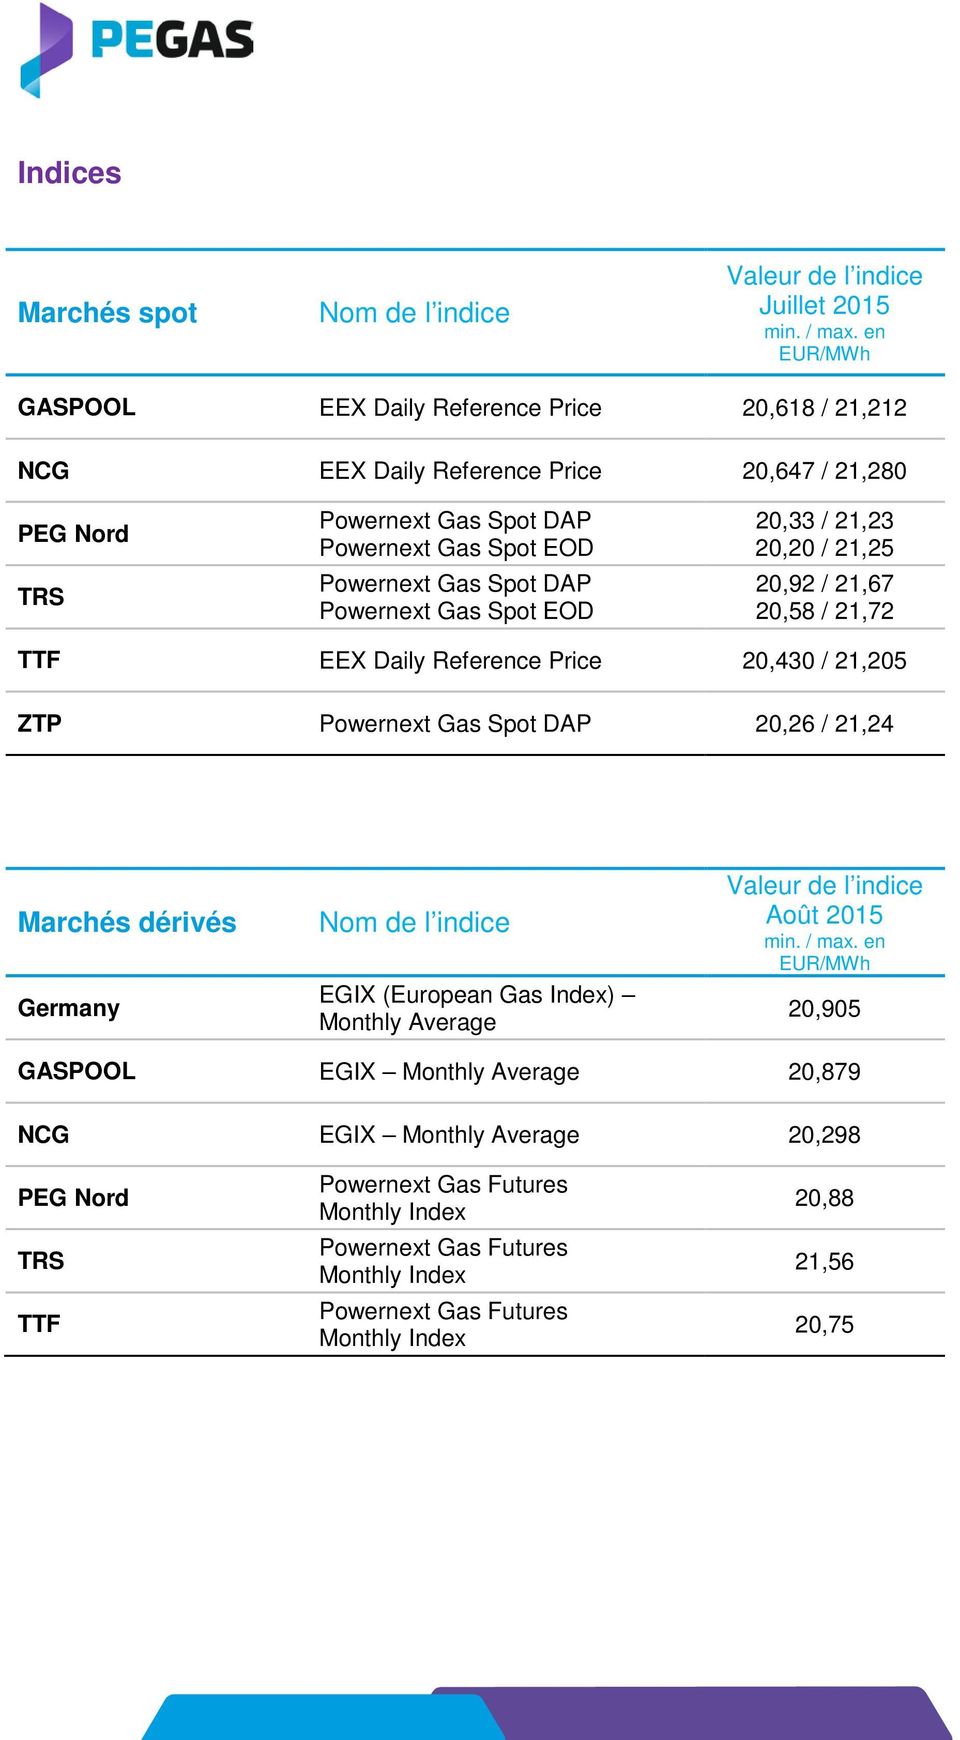 Spot DAP Powernext Gas Spot EOD 20,33 / 21,23 20,20 / 21,25 20,92 / 21,67 20,58 / 21,72 TTF EEX Daily Reference Price 20,430 / 21,205 ZTP Powernext Gas Spot DAP 20,26 / 21,24